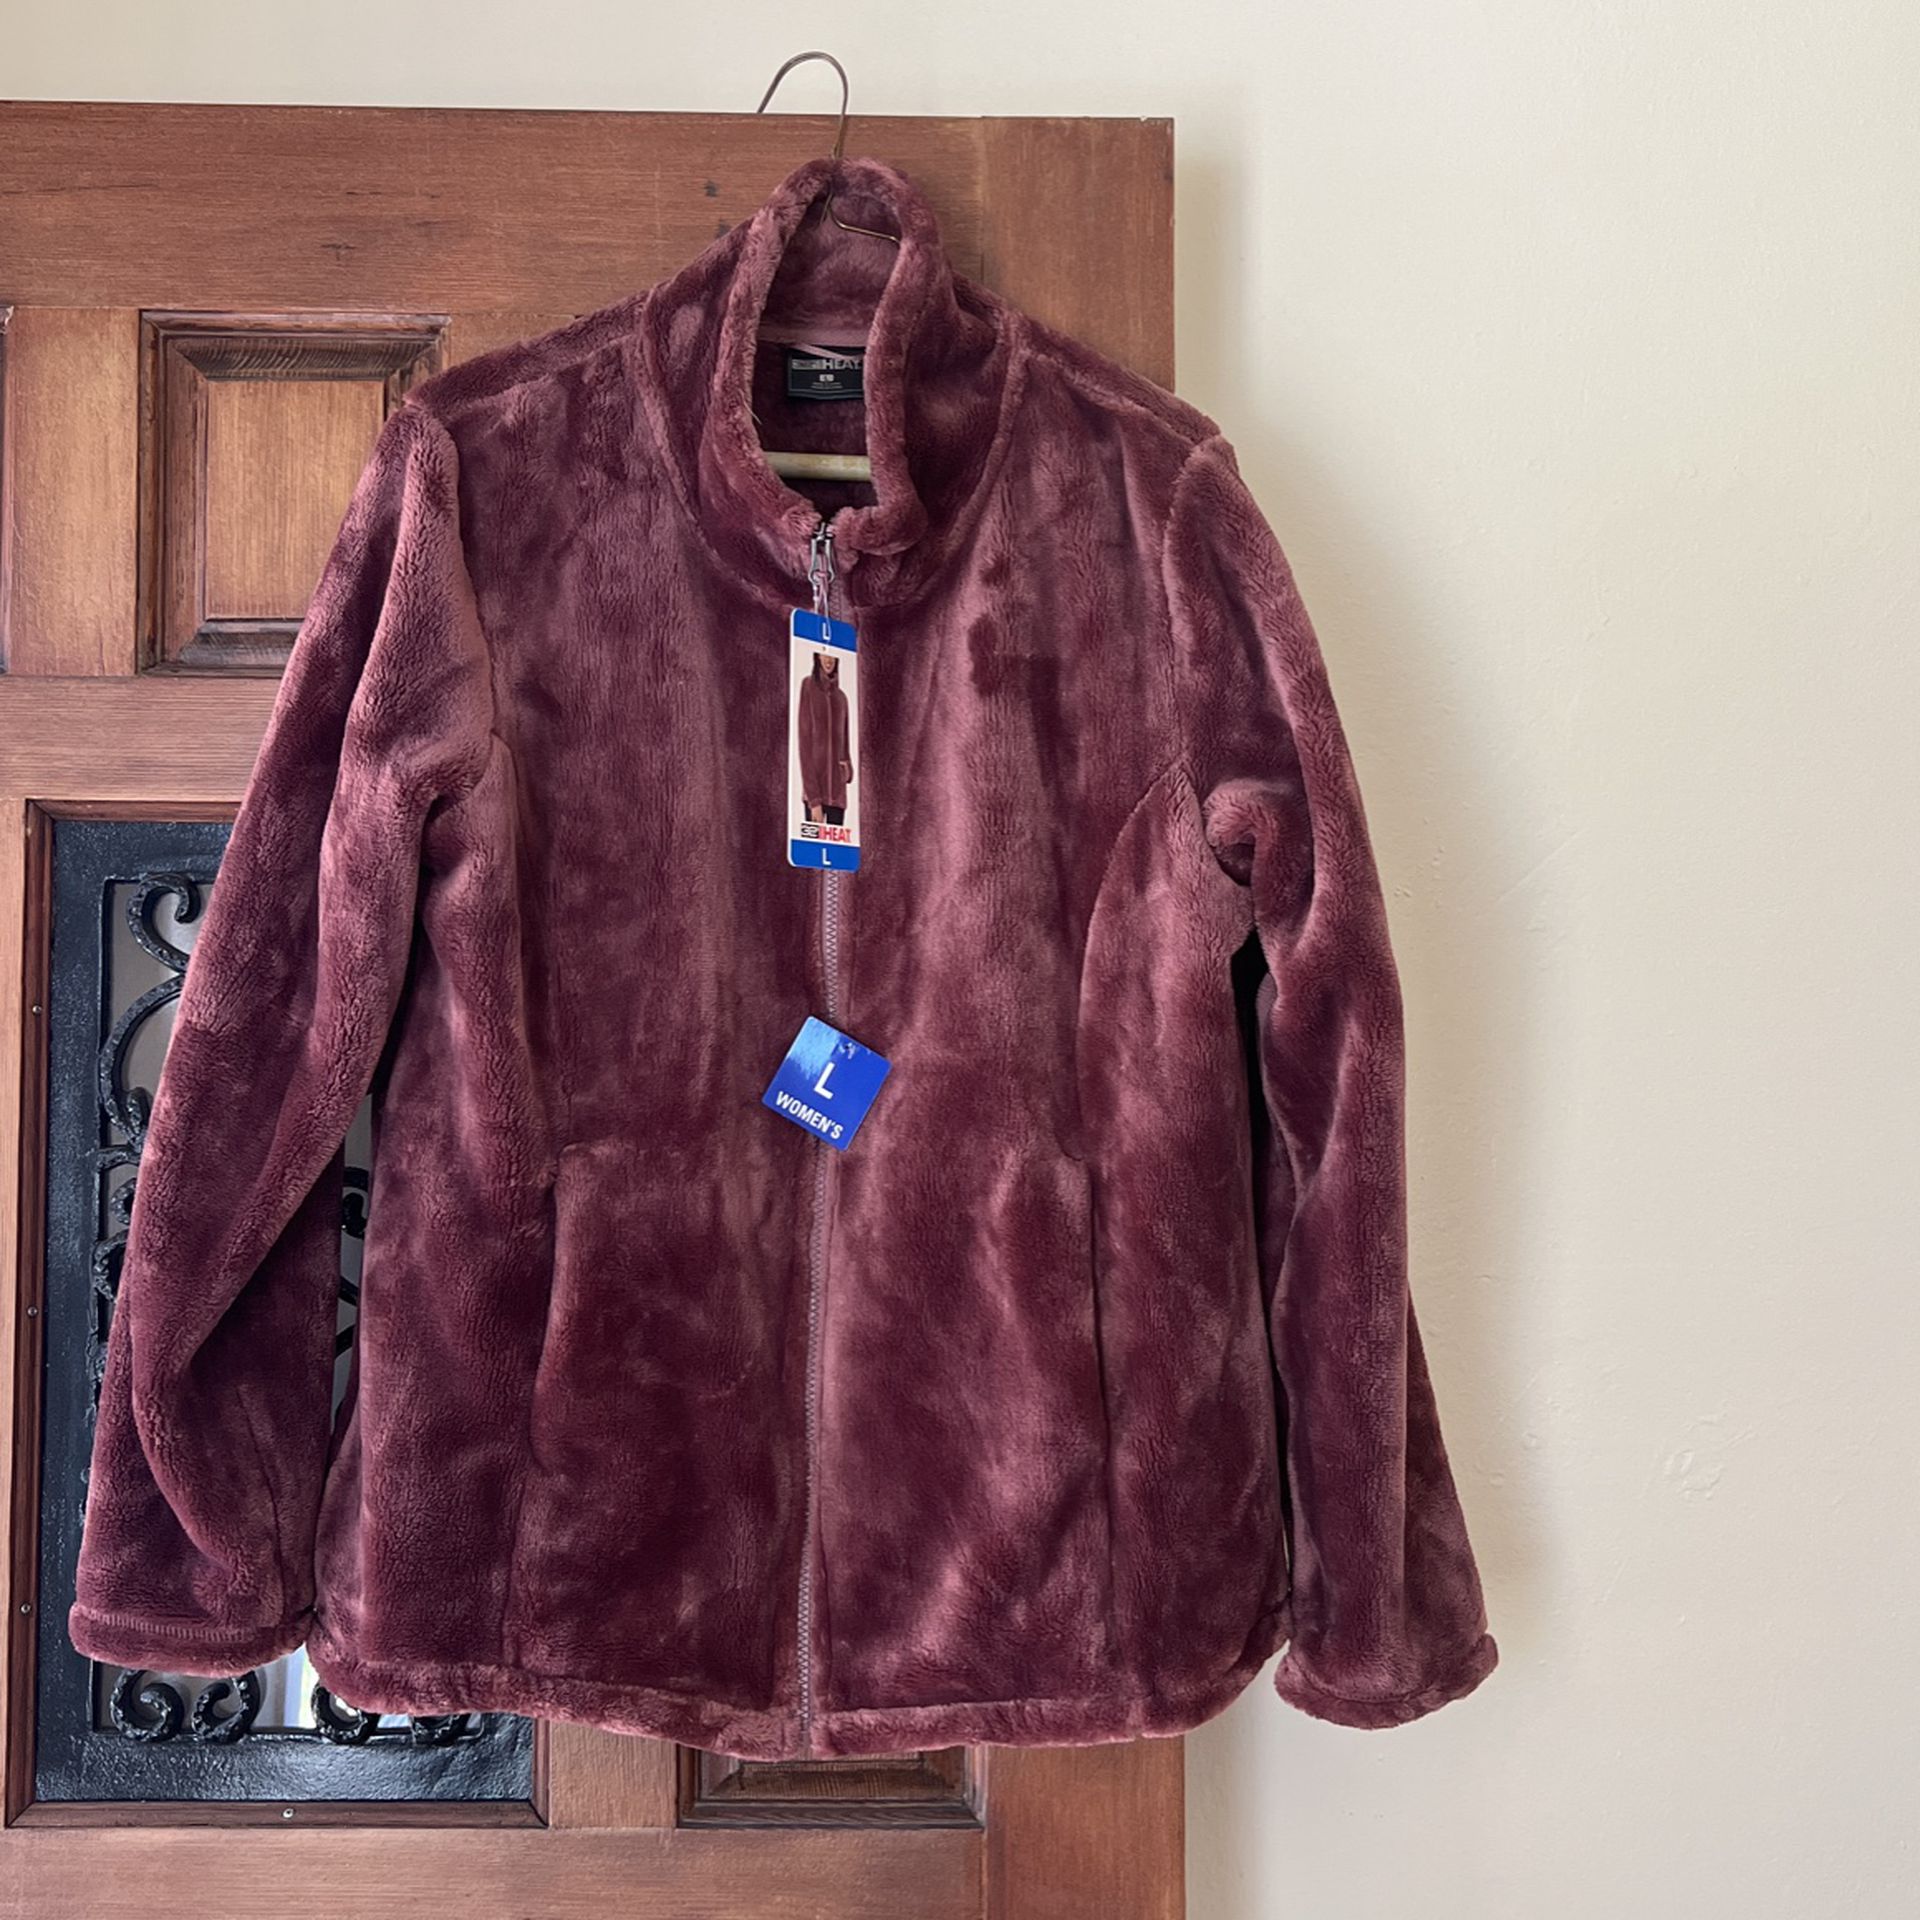 32 degrees Heat jacket for sale $10 - Chaqueta 32 grados marca de venta $10